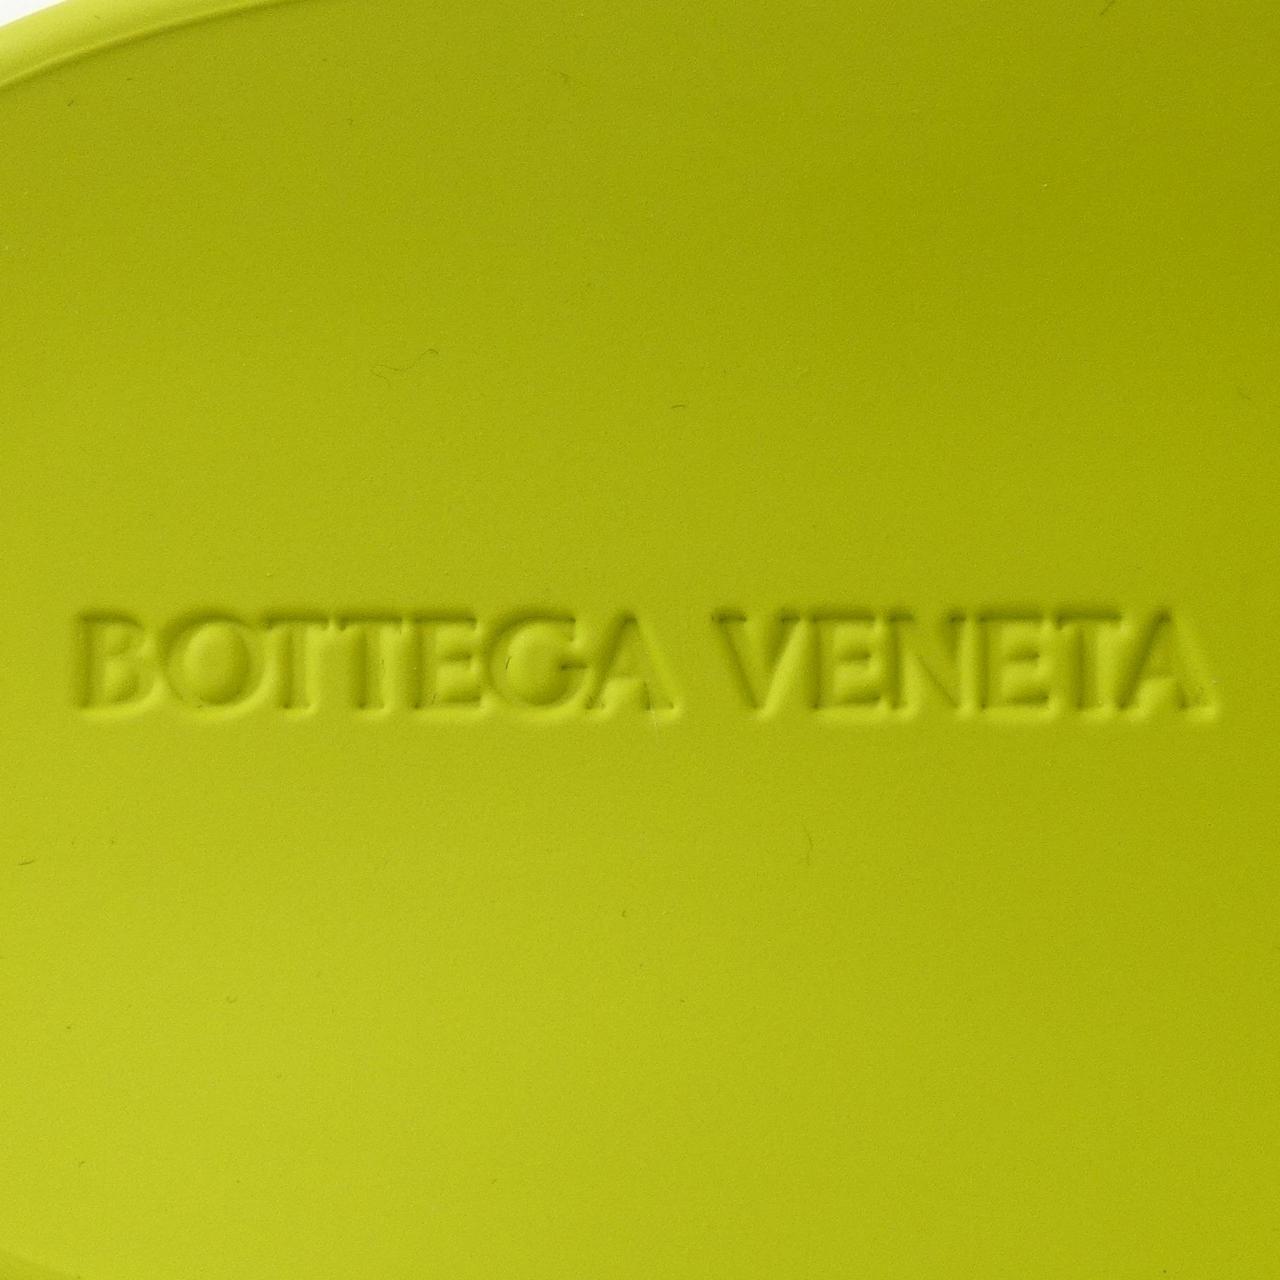 ボッテガヴェネタ BOTTEGA VENETA サンダル